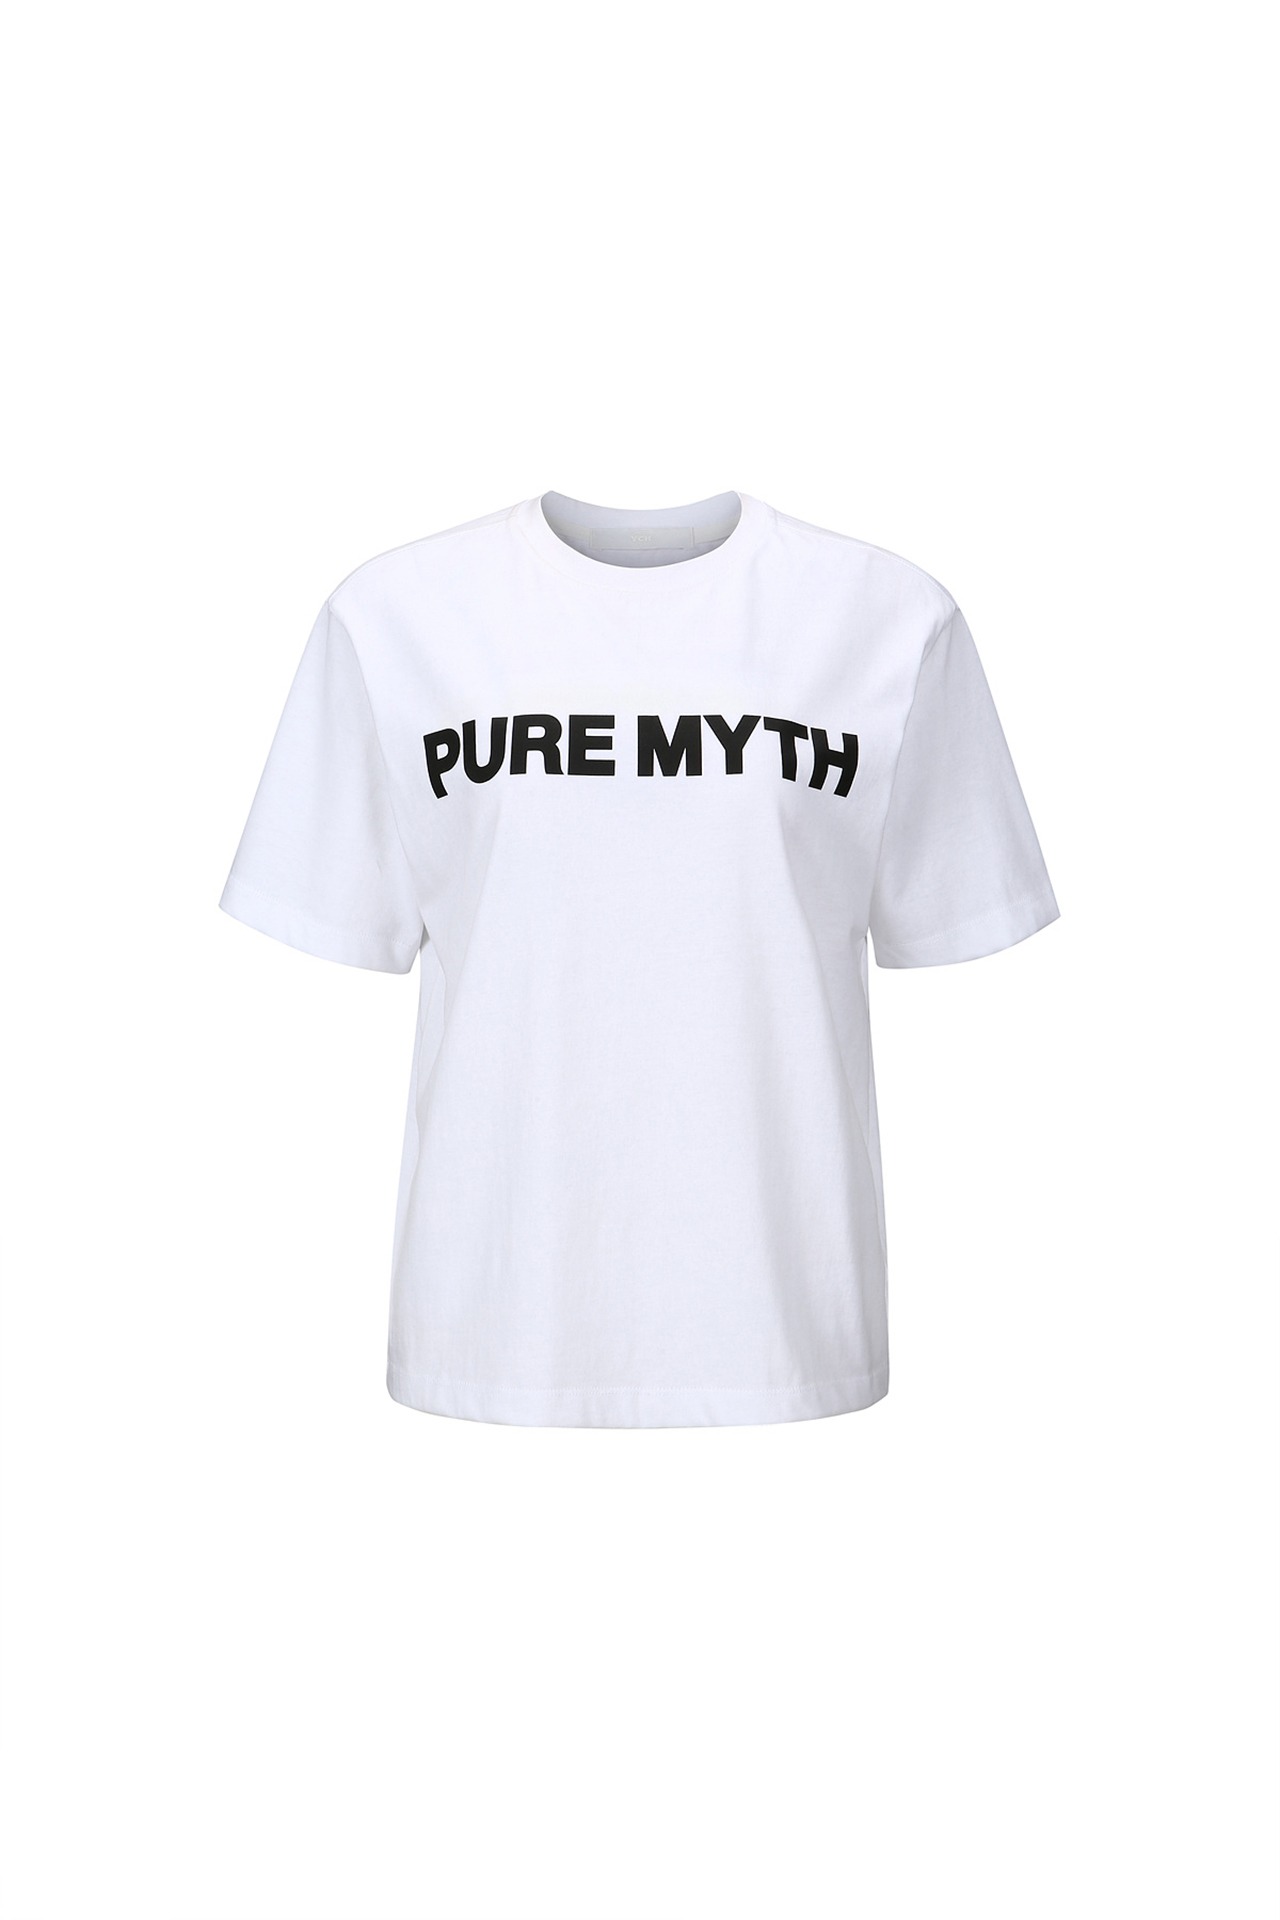 PURE MYTH-PRINT T-SHIRT